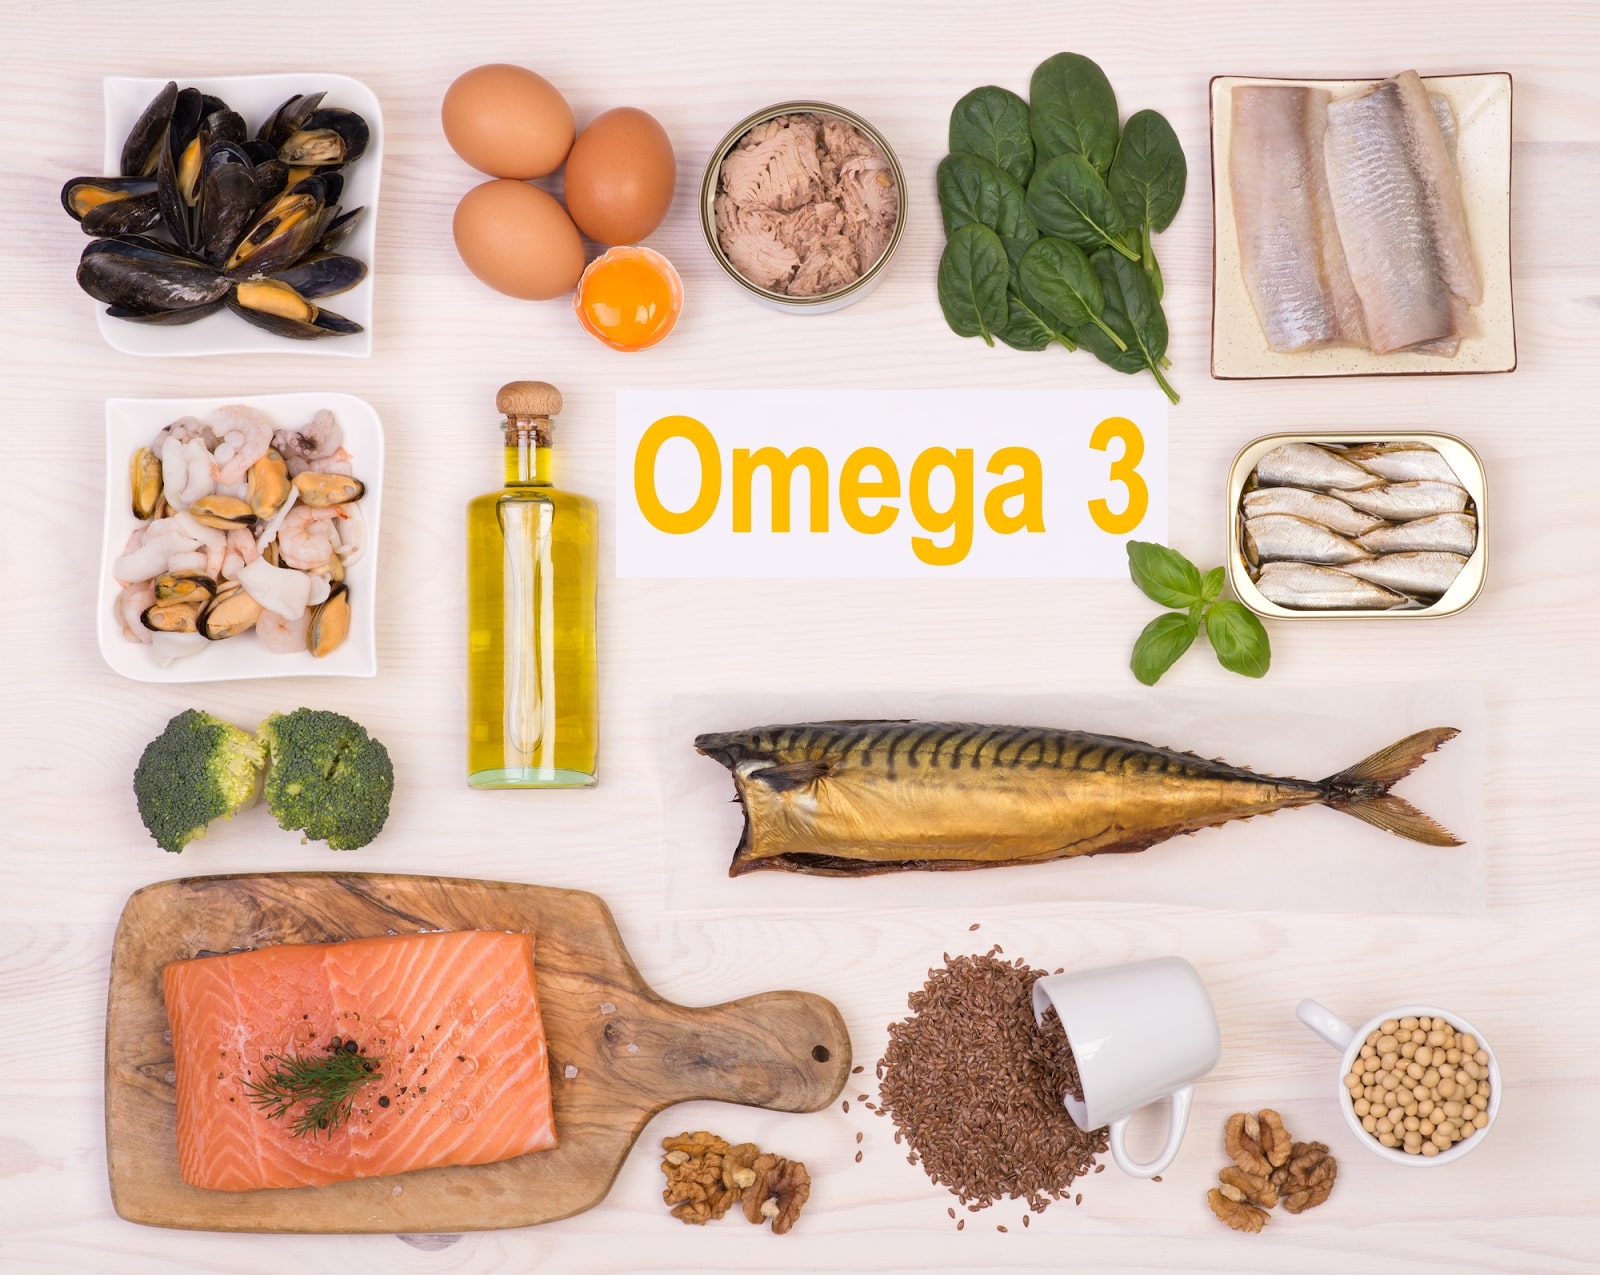 Omega 3 cơ thể không tự tổng hợp mà cần bổ sung qua đường ăn uống